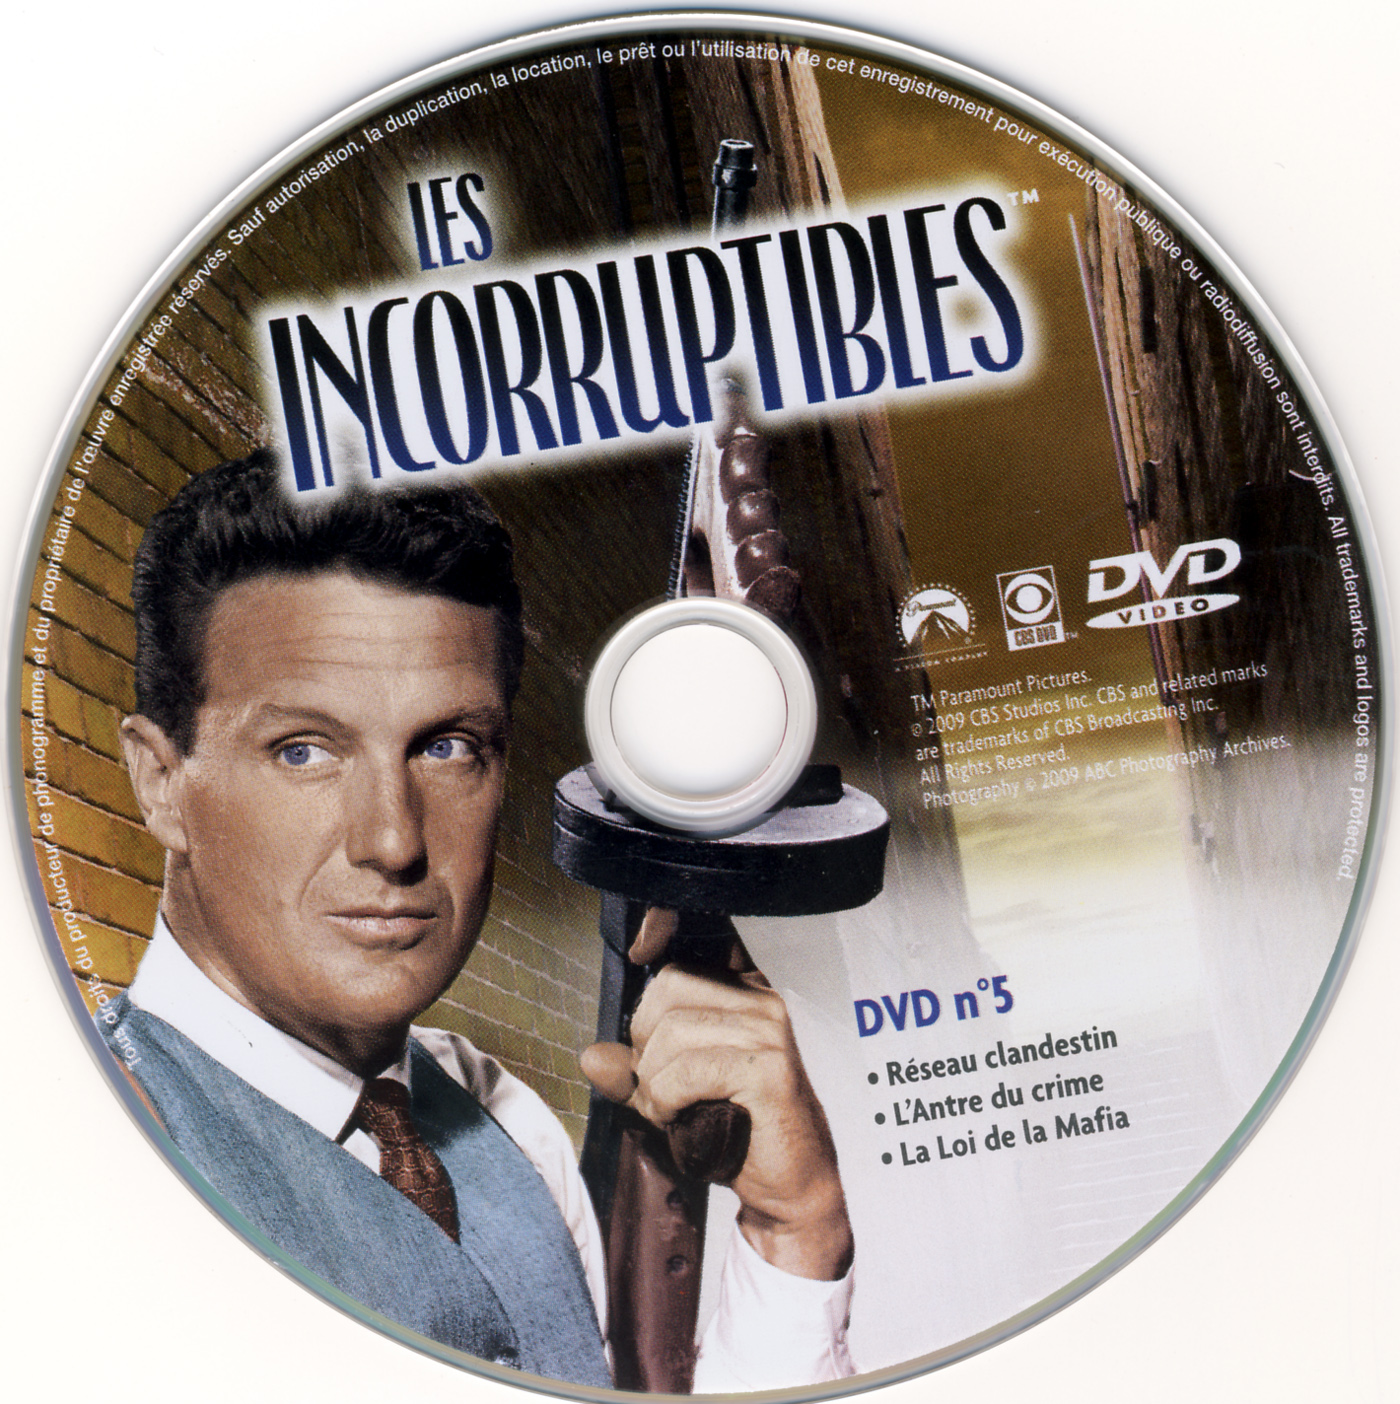 Les incorruptibles intgrale DVD 05